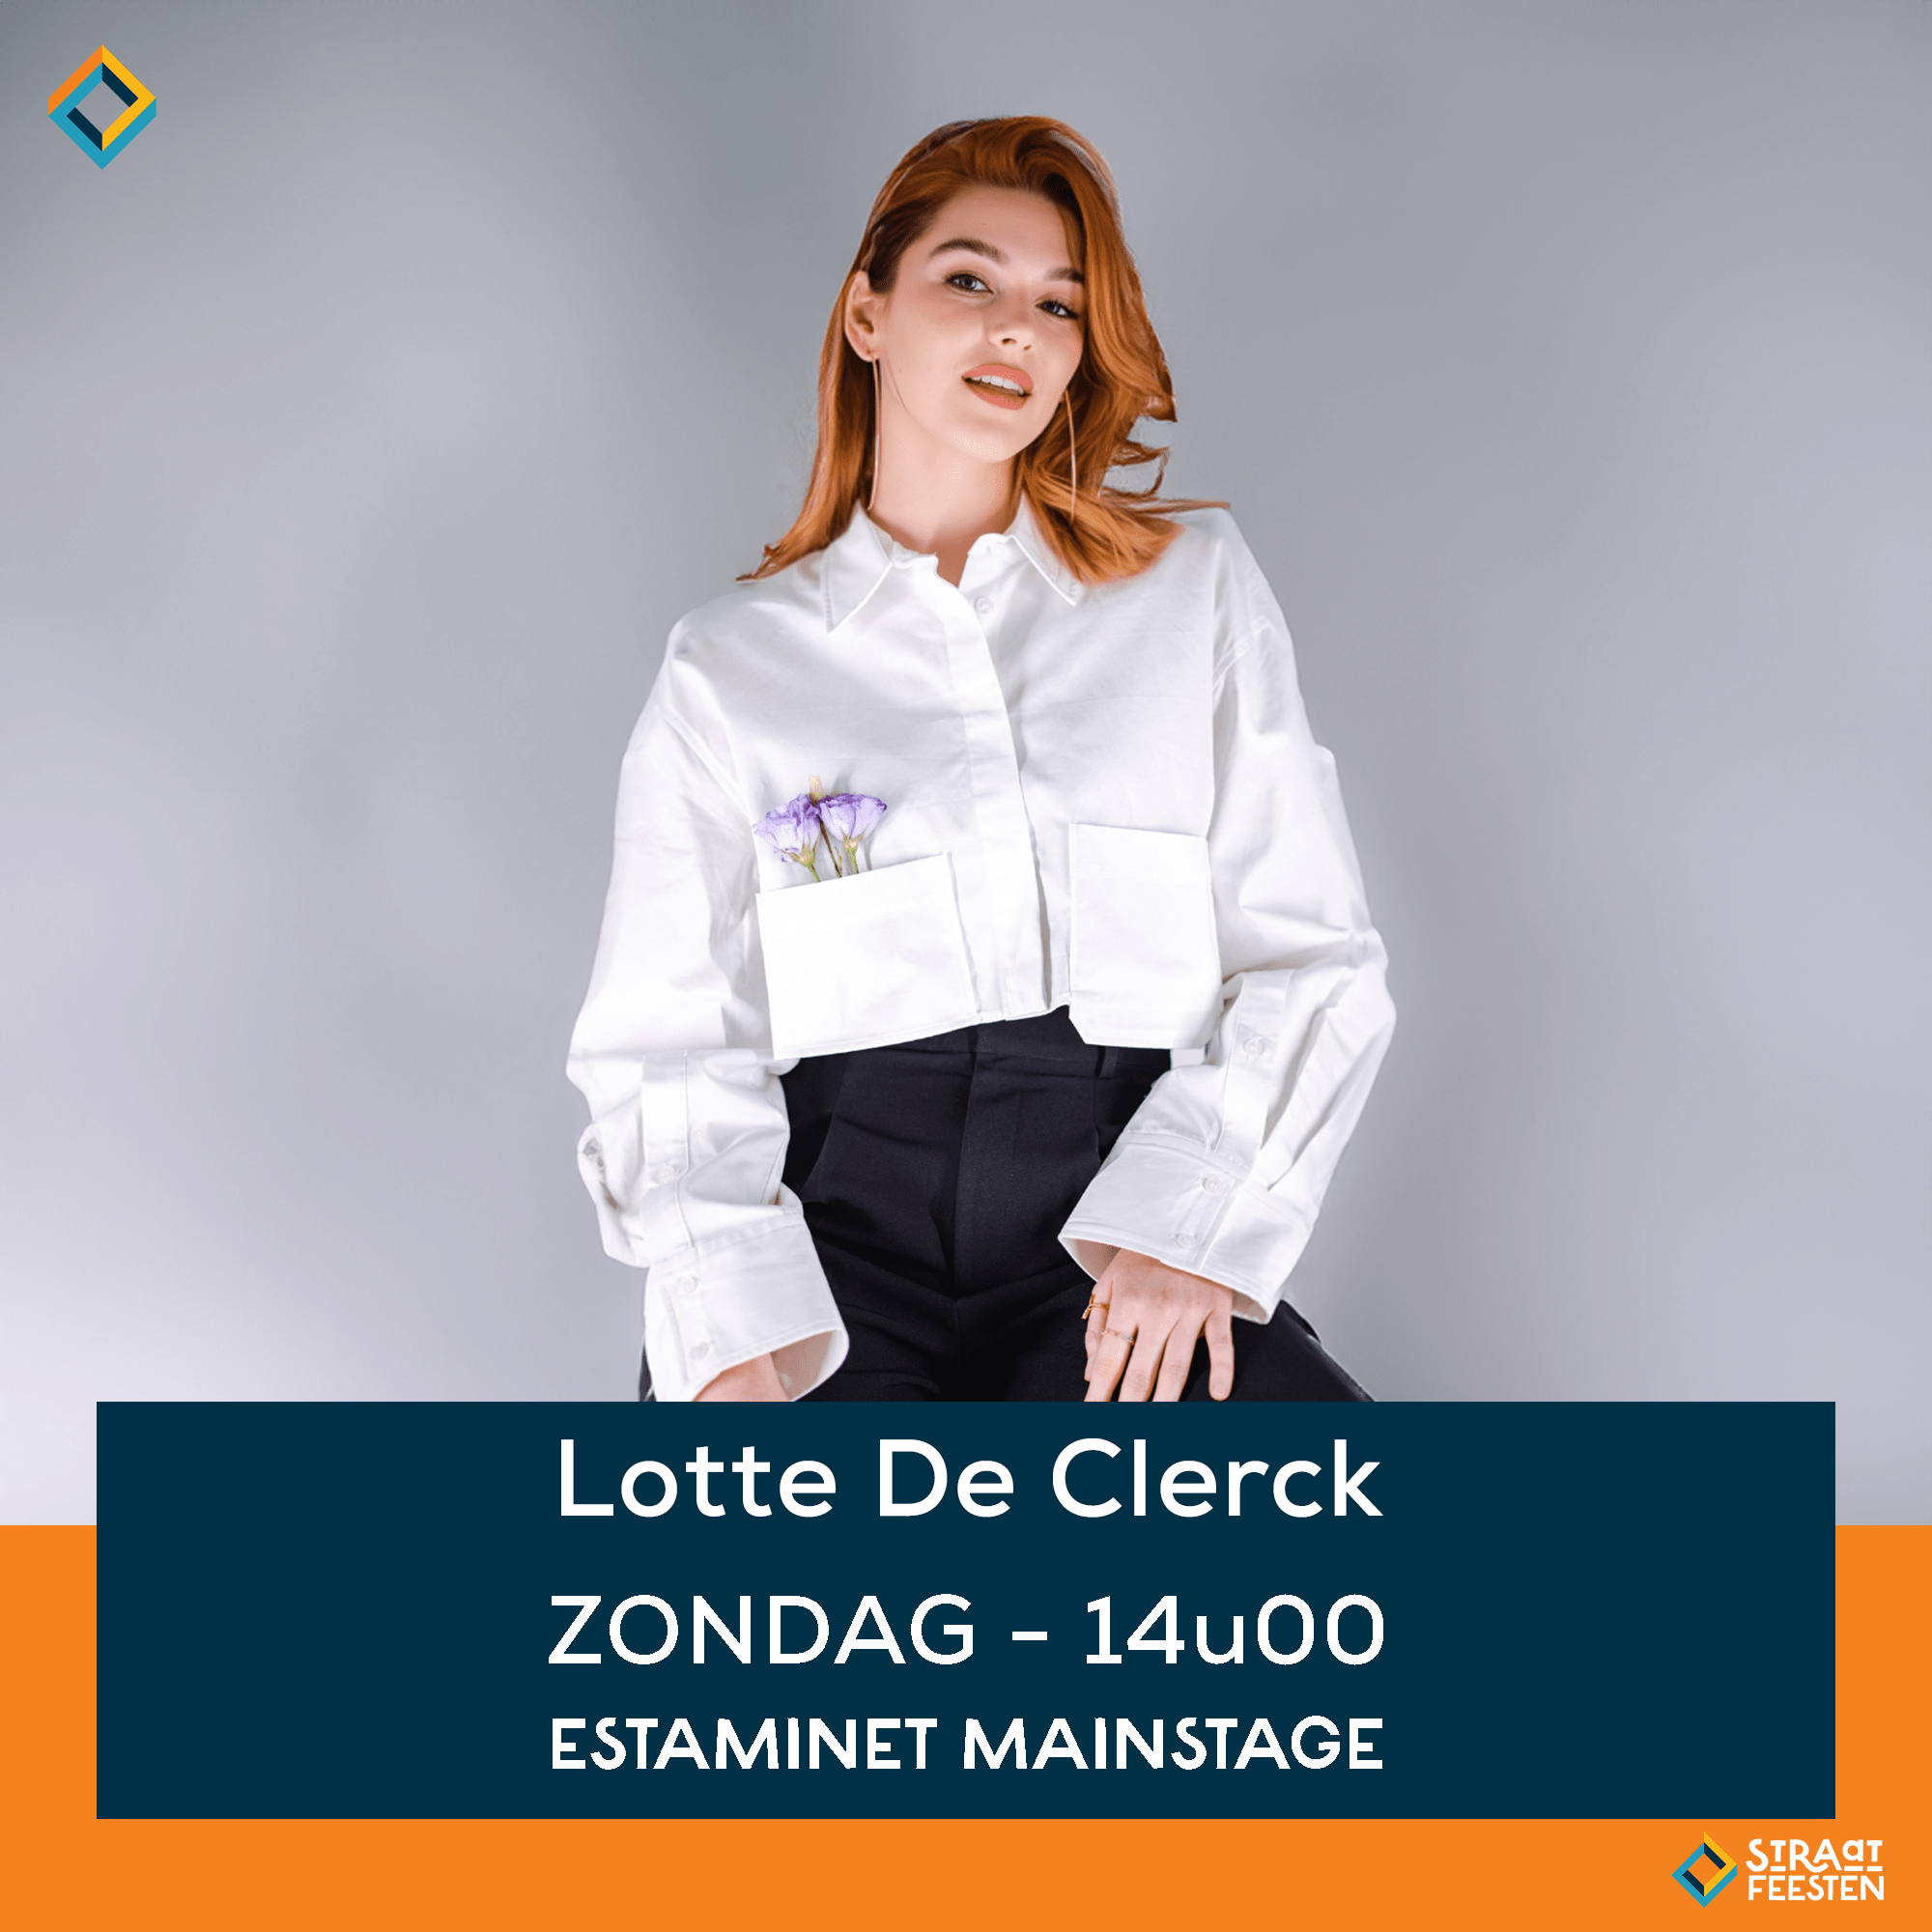 Lotte De Clerck